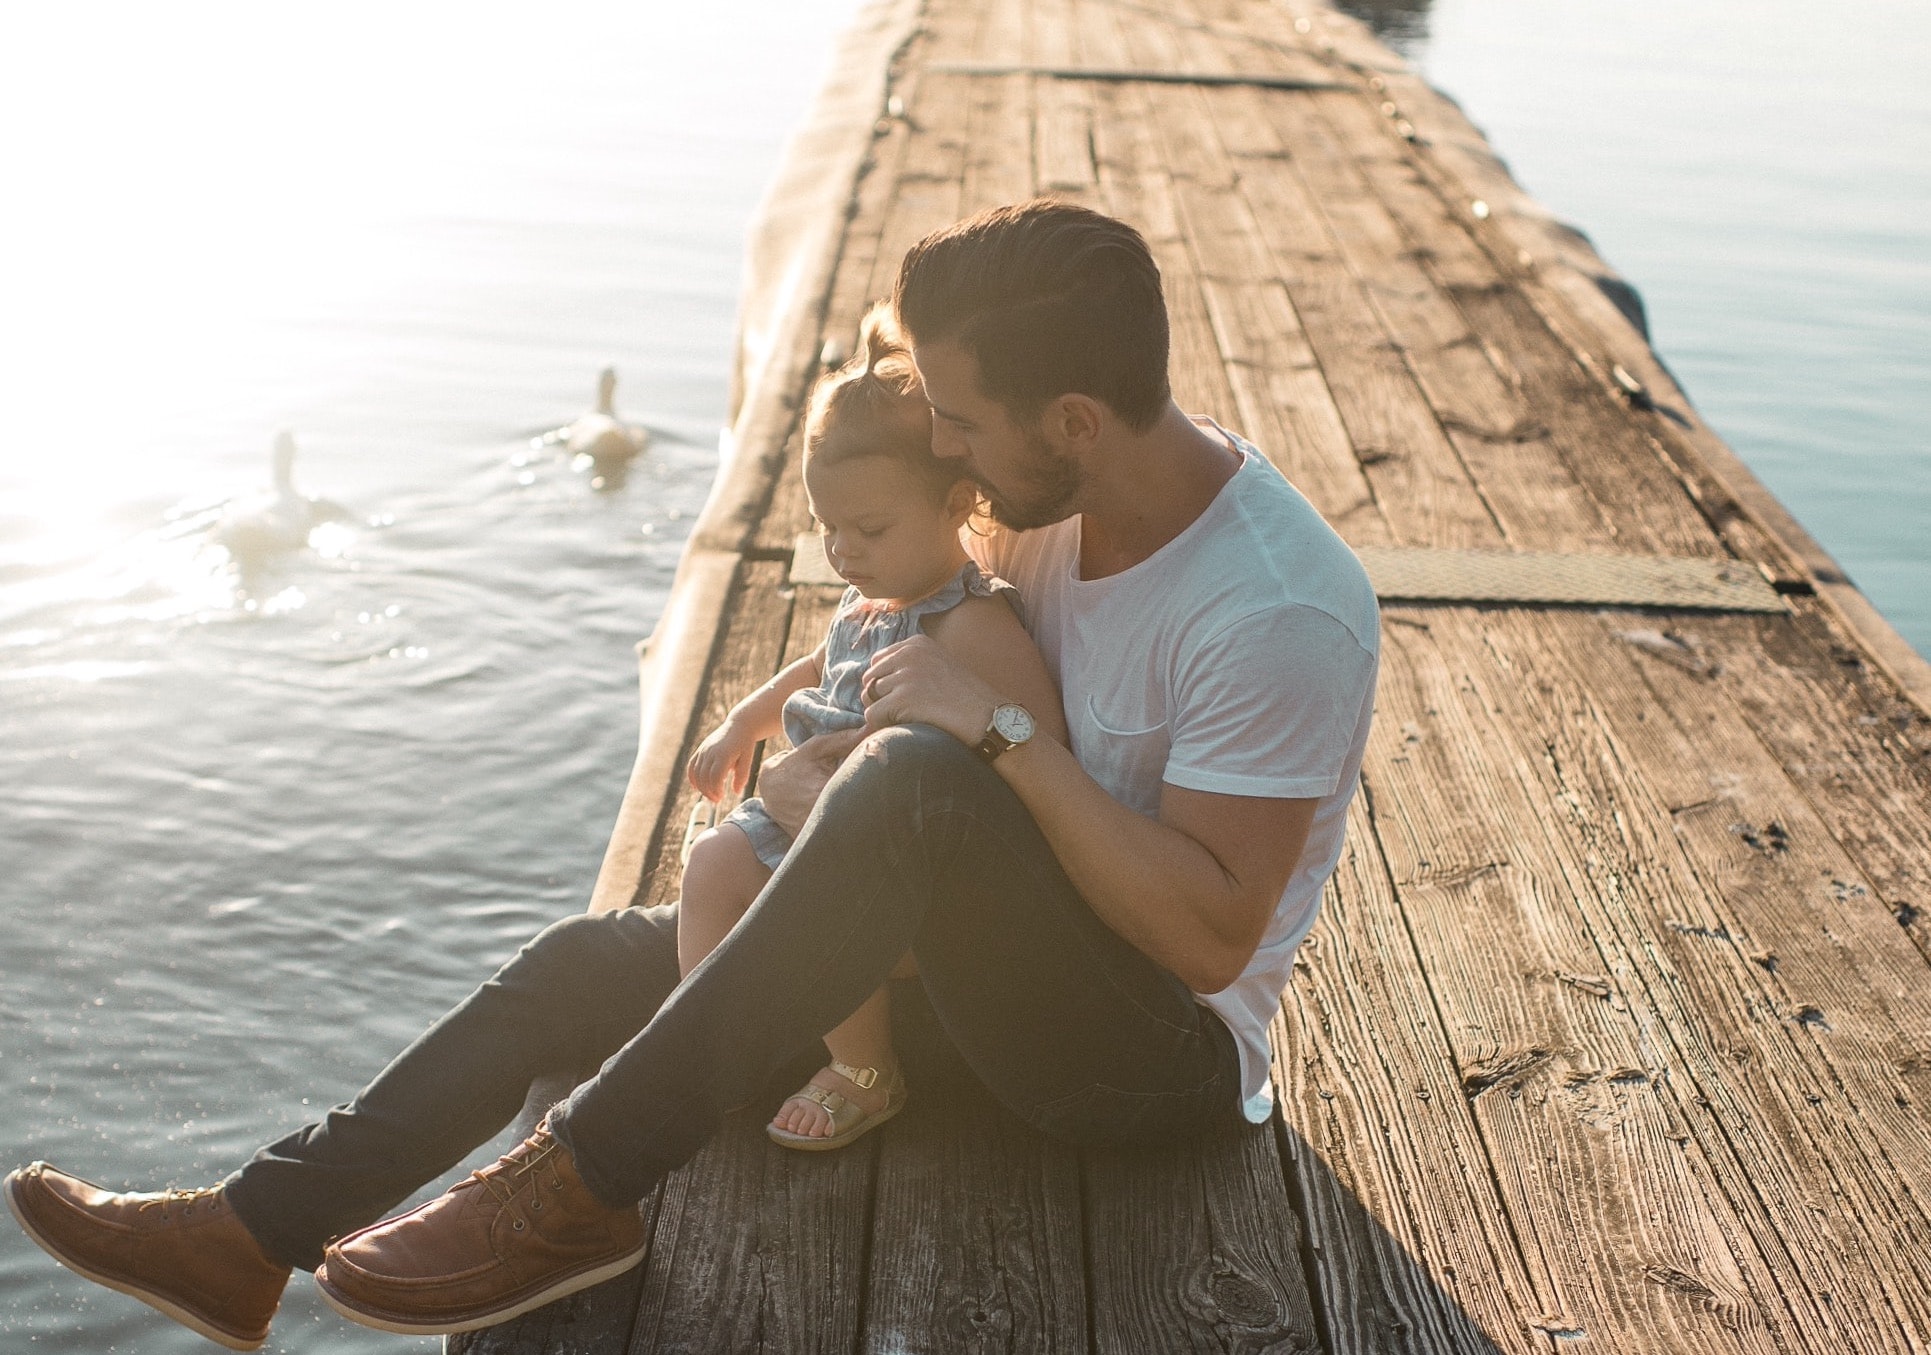 Père célibataire : comment trouver l’amour tout en étant parent ?